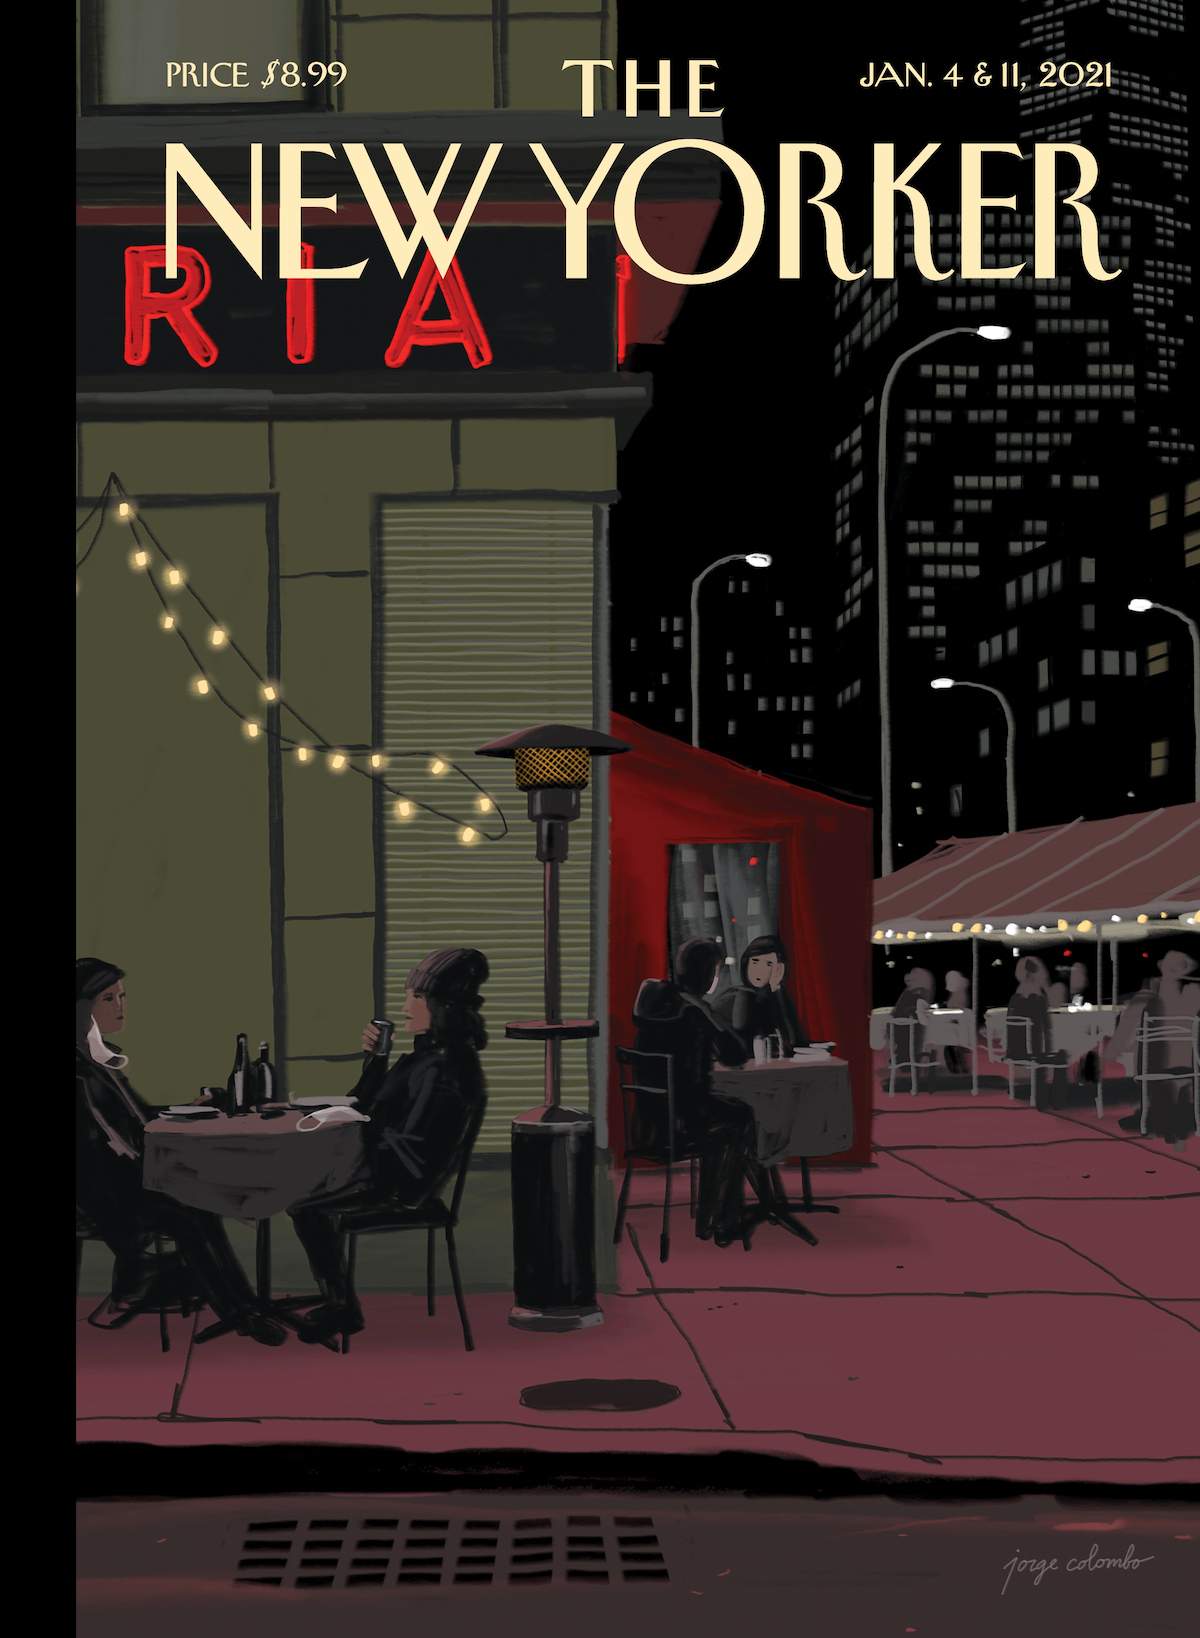 Vetustideces: Las portadas 2021 de la revista The New Yorker